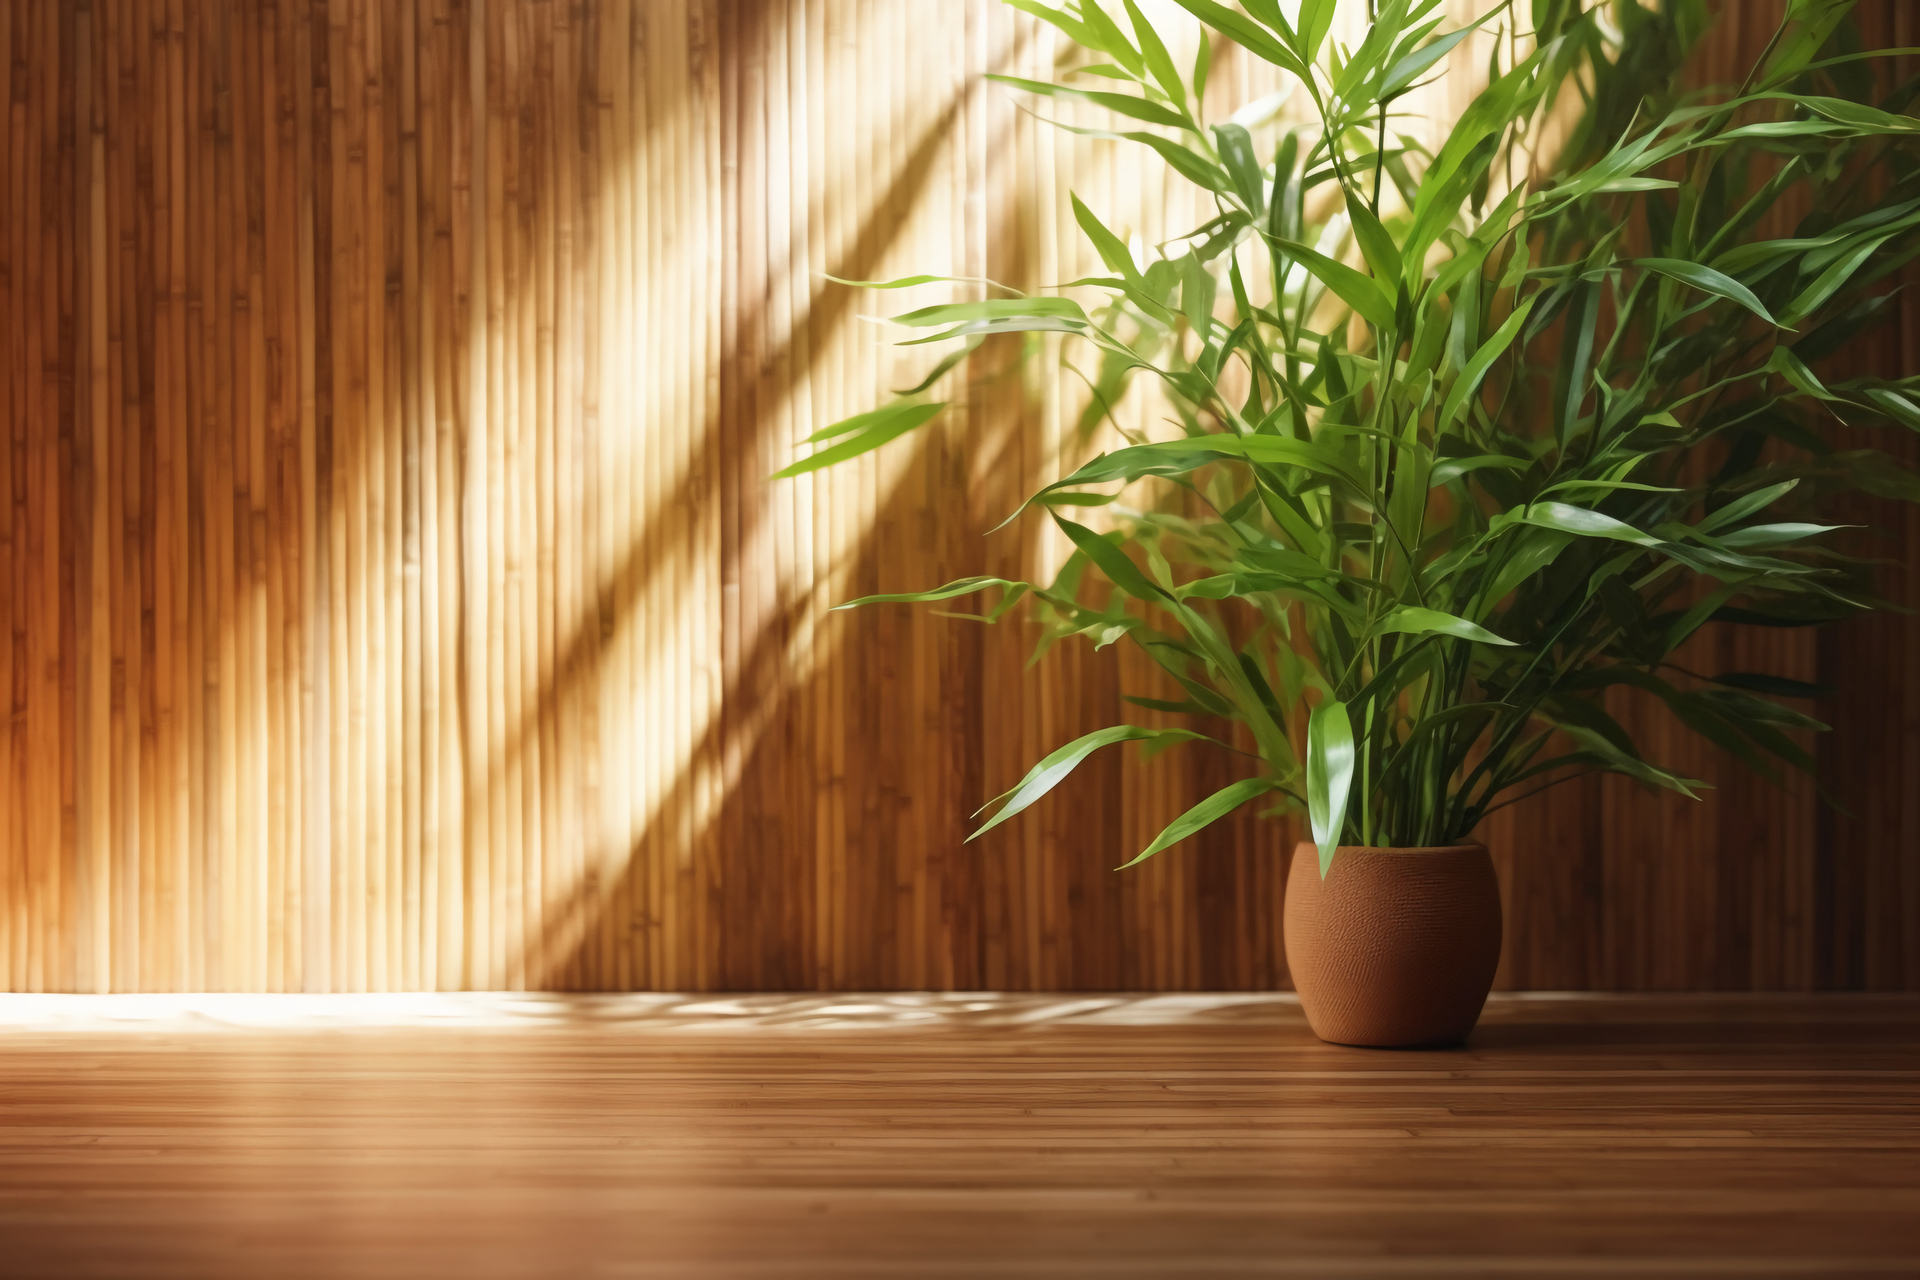 Na tym obrazku widoczny jest elegancki doniczkowy bambus, dumnie stojący na podłodze, tworząc wyjątkową ozdobę w pomieszczeniu. Jego długie, zielone łodygi delikatnie się pochylają, dodając harmonii i spokoju do otoczenia. Tło ściany stanowi idealne tło dla tego roślinnego piękna, podkreślając jego naturalny urok i wprowadzając do wnętrza przyjemną atmosferę natury